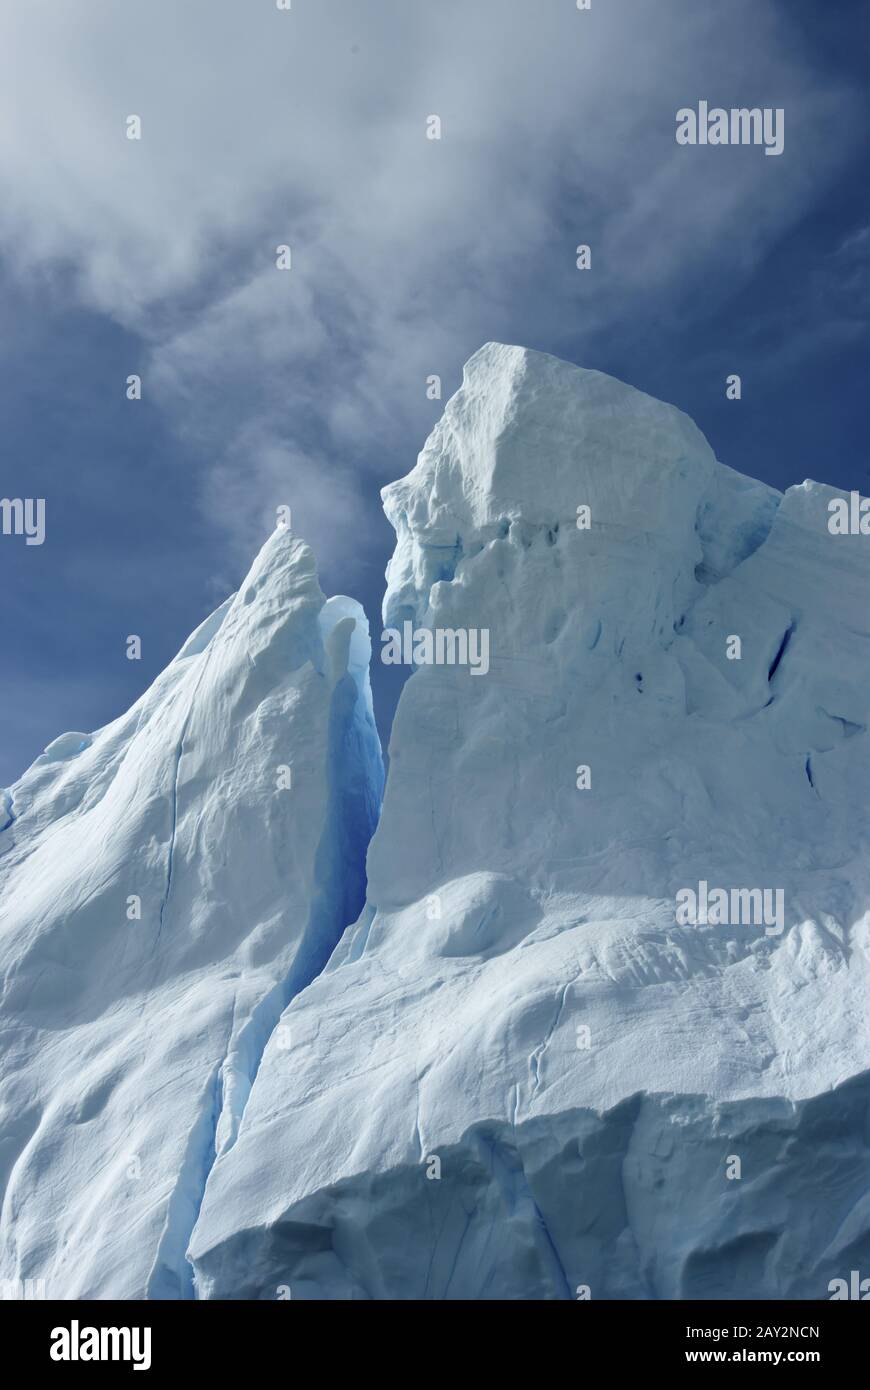 Spitze eines Eisbergs gegen einen blauen Himmel Antarktis Sommer. Stockfoto